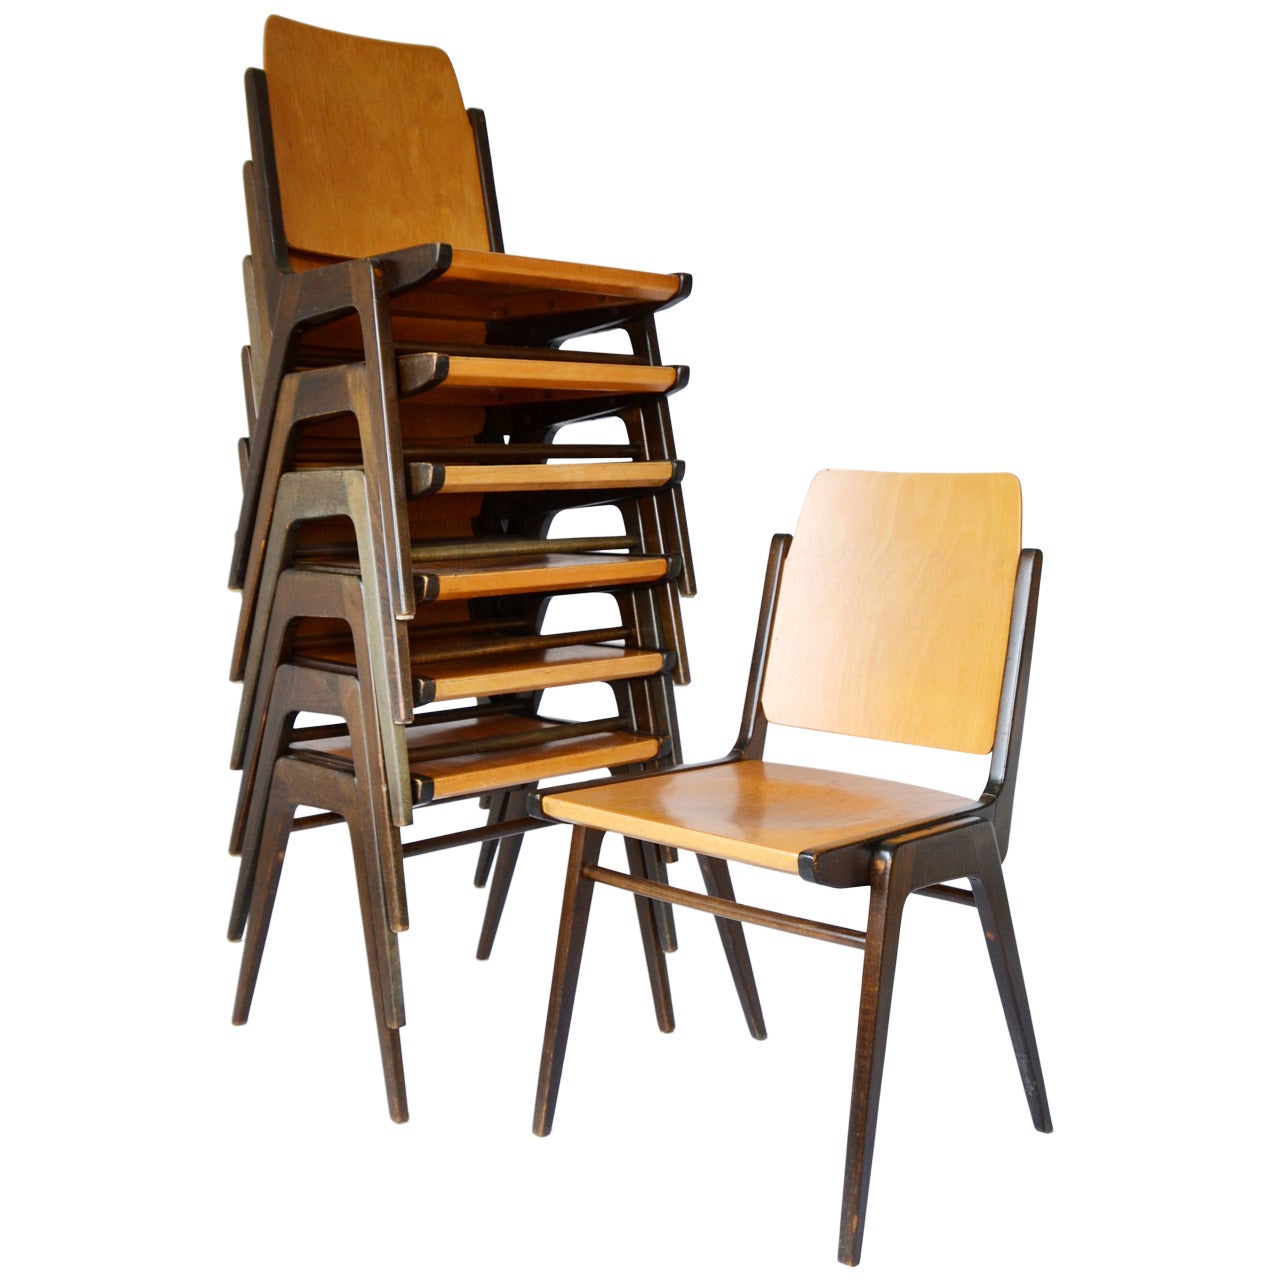 Einer von zwölf zweifarbigen Stapelstühlen des österreichischen Architekten Franz Schuster, die von Wiesner-Hager um 1960 (Ende der 1950er oder Anfang der 1960er Jahre) hergestellt wurden.
Dieser Stuhl wurde 1959 von Franz Schuster für das